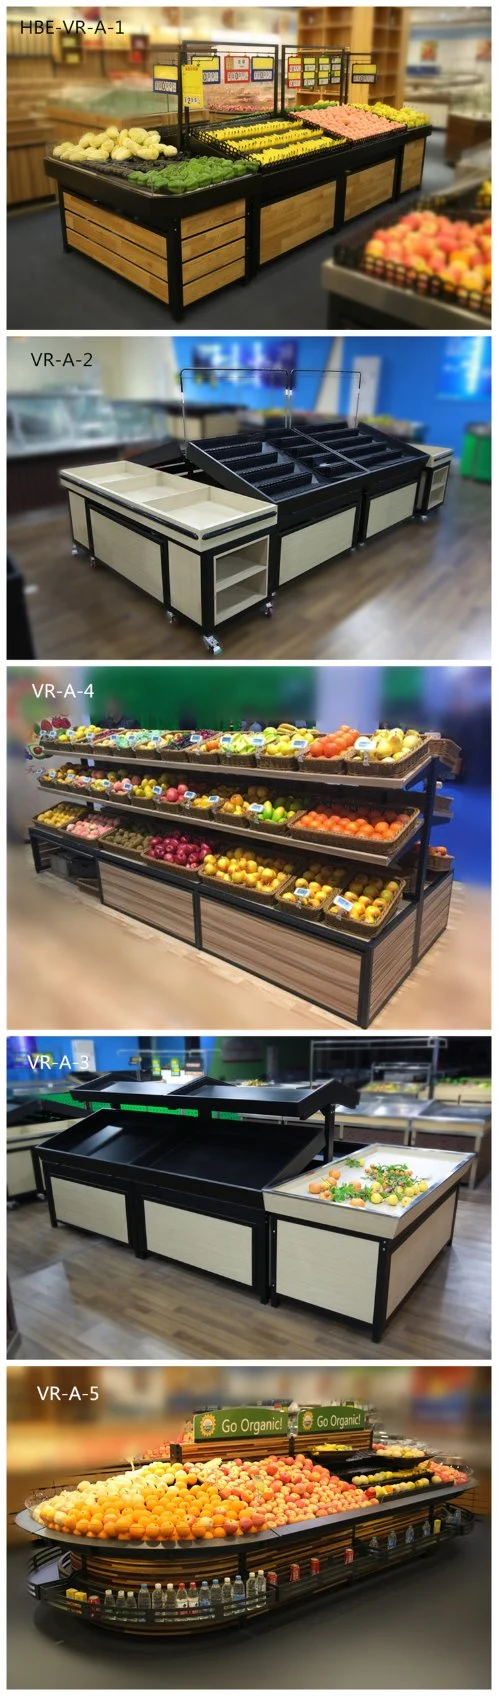 Supermarket Display Shelf for Fruits and Vegetables